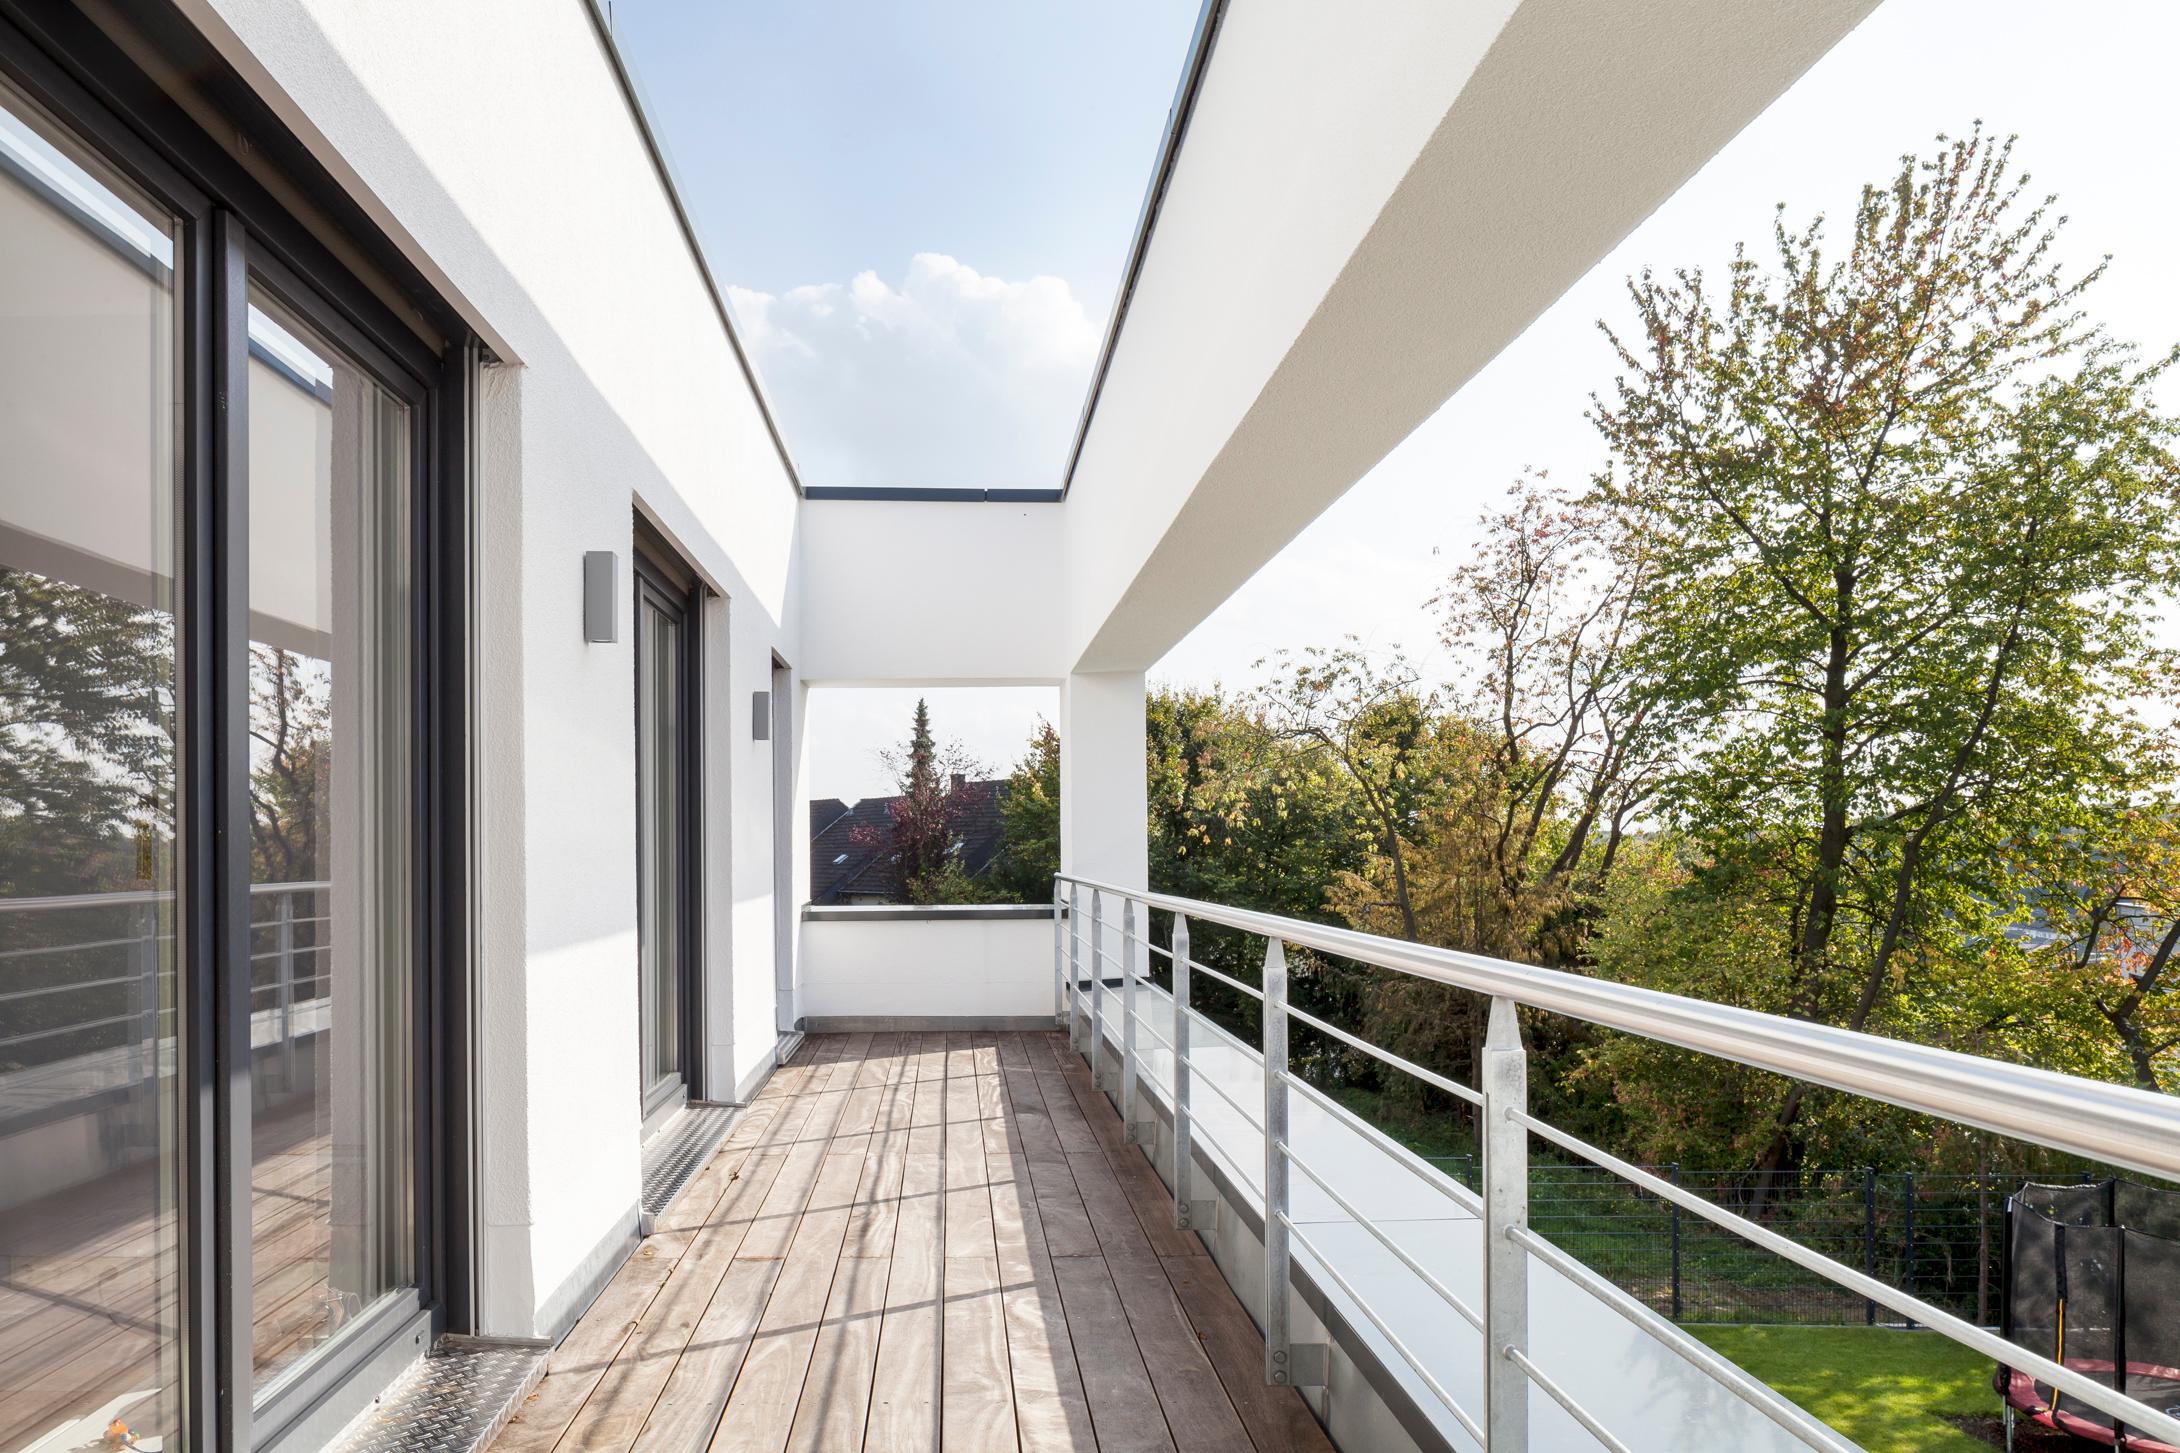 Freibereich #bauhausstil #terrasse #minimalistisch #eingang #flachdach #garage #innenarchitektur ©Constantin Meyer Photographie